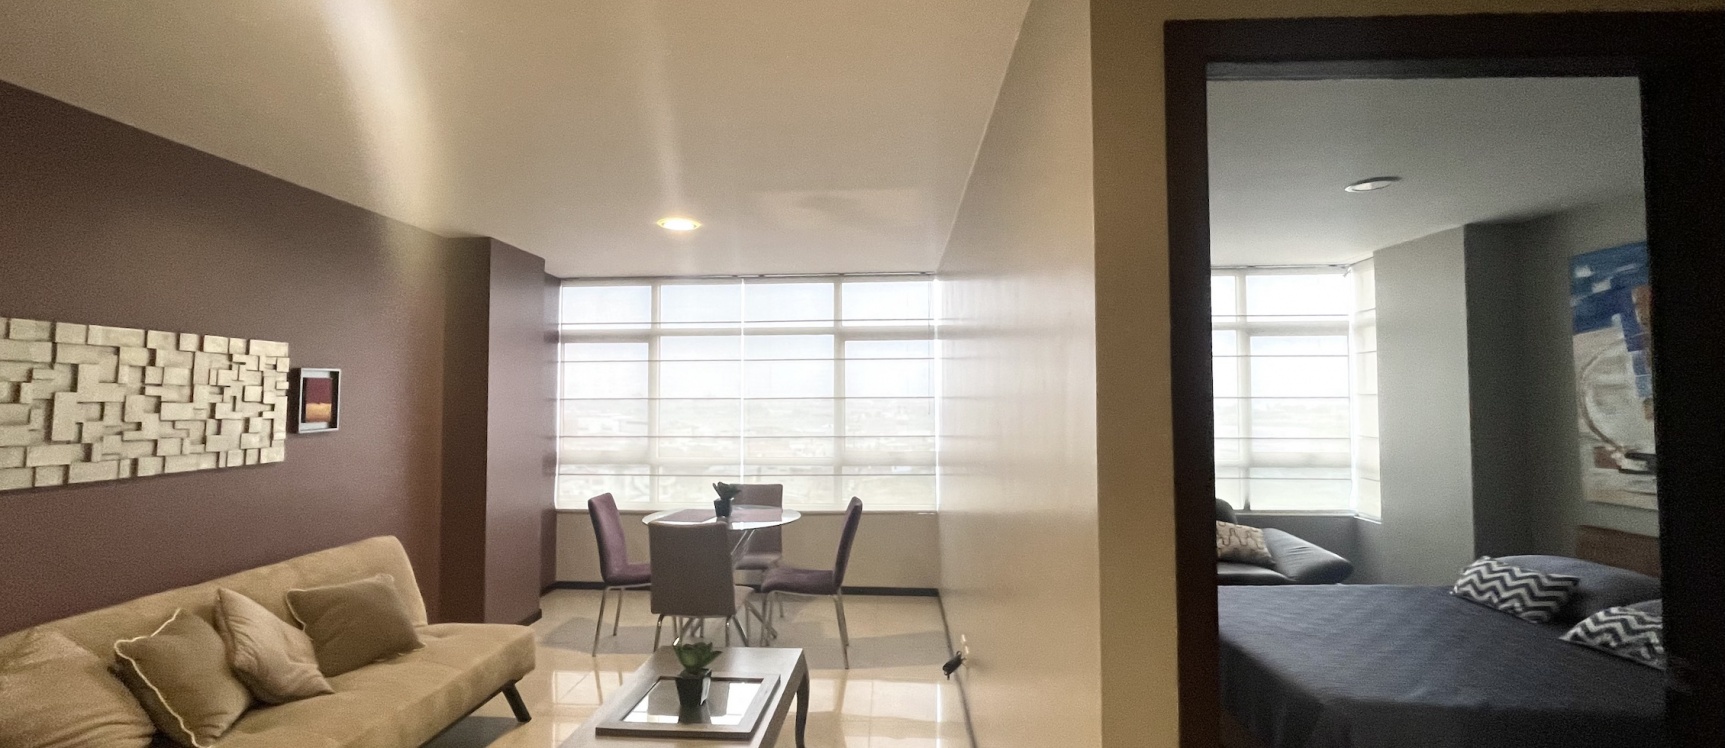 GeoBienes - Suite amoblada en alquiler ubicada en el Edificio Elite Building  - Plusvalia Guayaquil Casas de venta y alquiler Inmobiliaria Ecuador